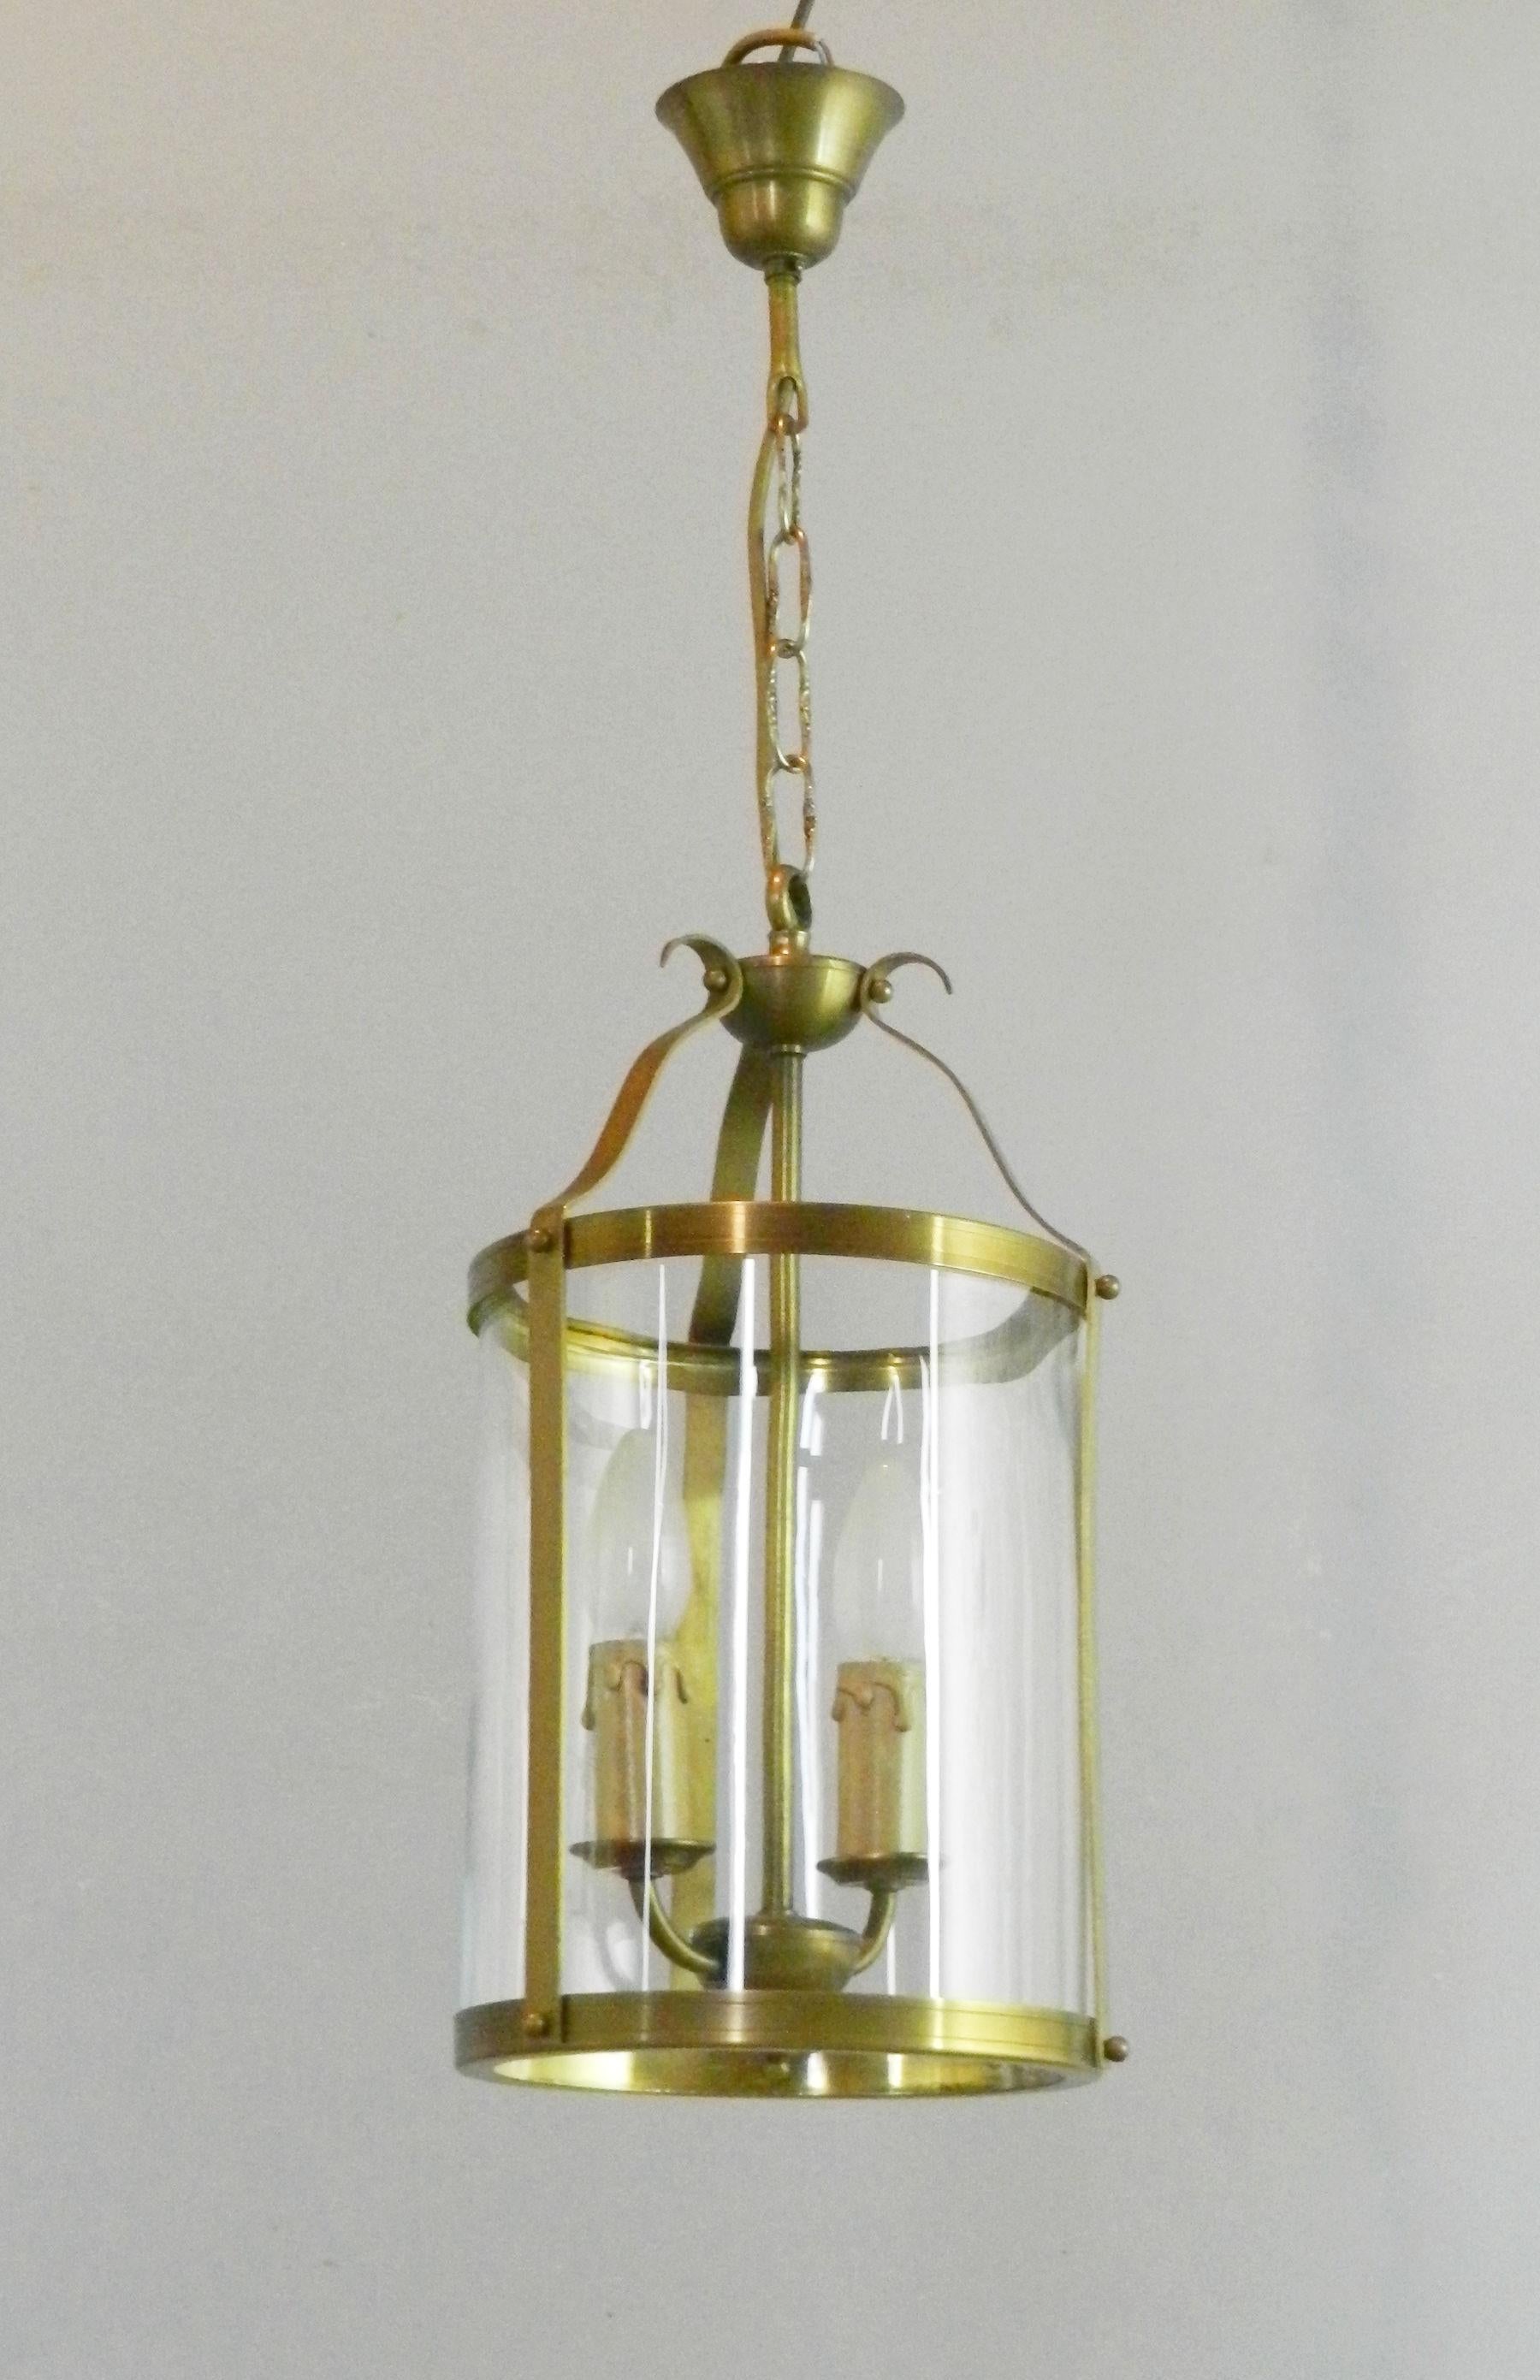 Eine attraktive französische Messinglaterne, die an ihrer originalen Kette und Deckenbefestigung aufgehängt ist und zu zwei zentralen Kerzenlichtern führt.

Dieser ist von einem einzigen konvexen Klarglasschirm umgeben.

Die Laterne ist voll